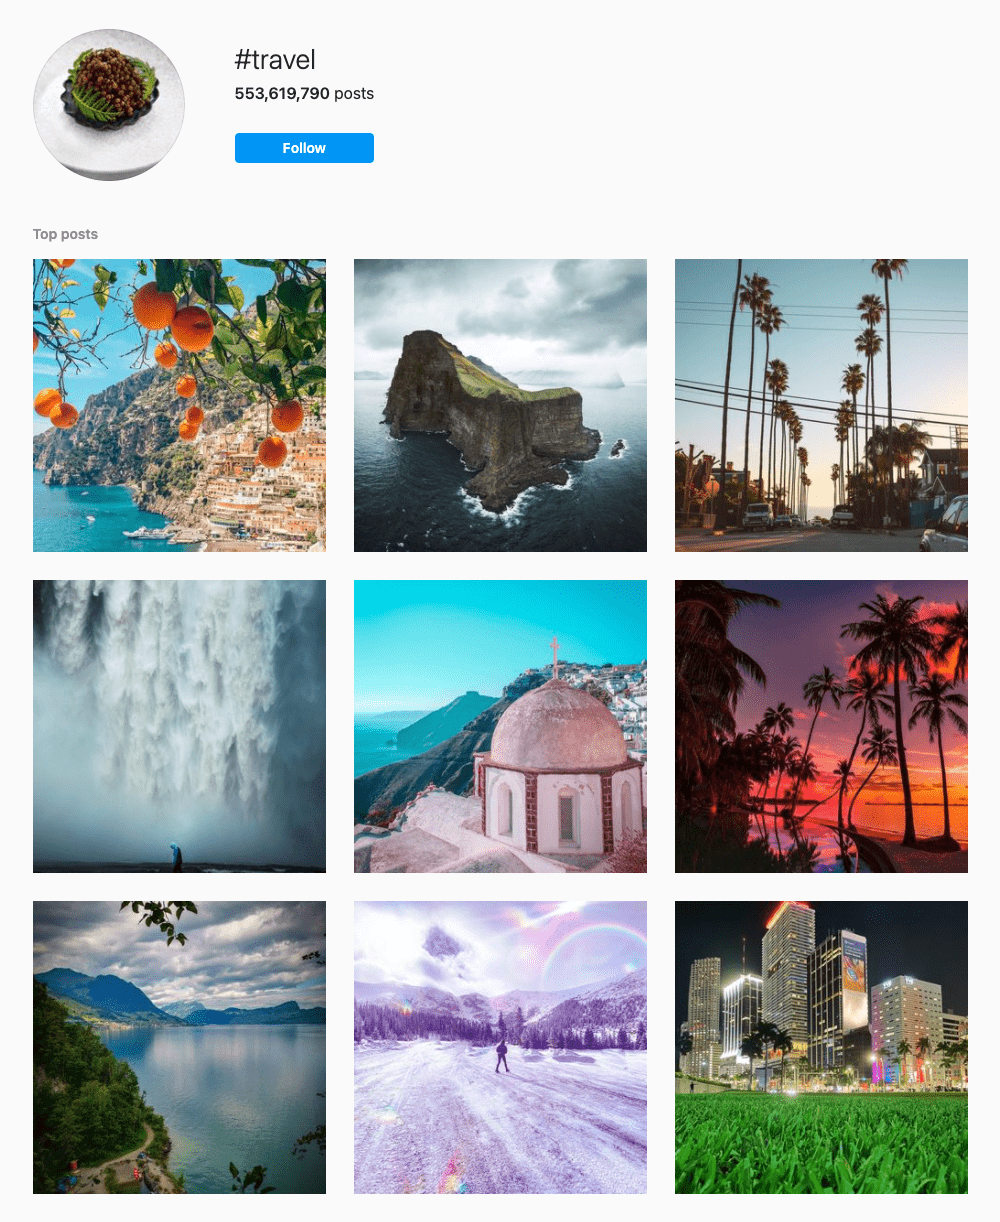 #travel Hashtags for Instagram